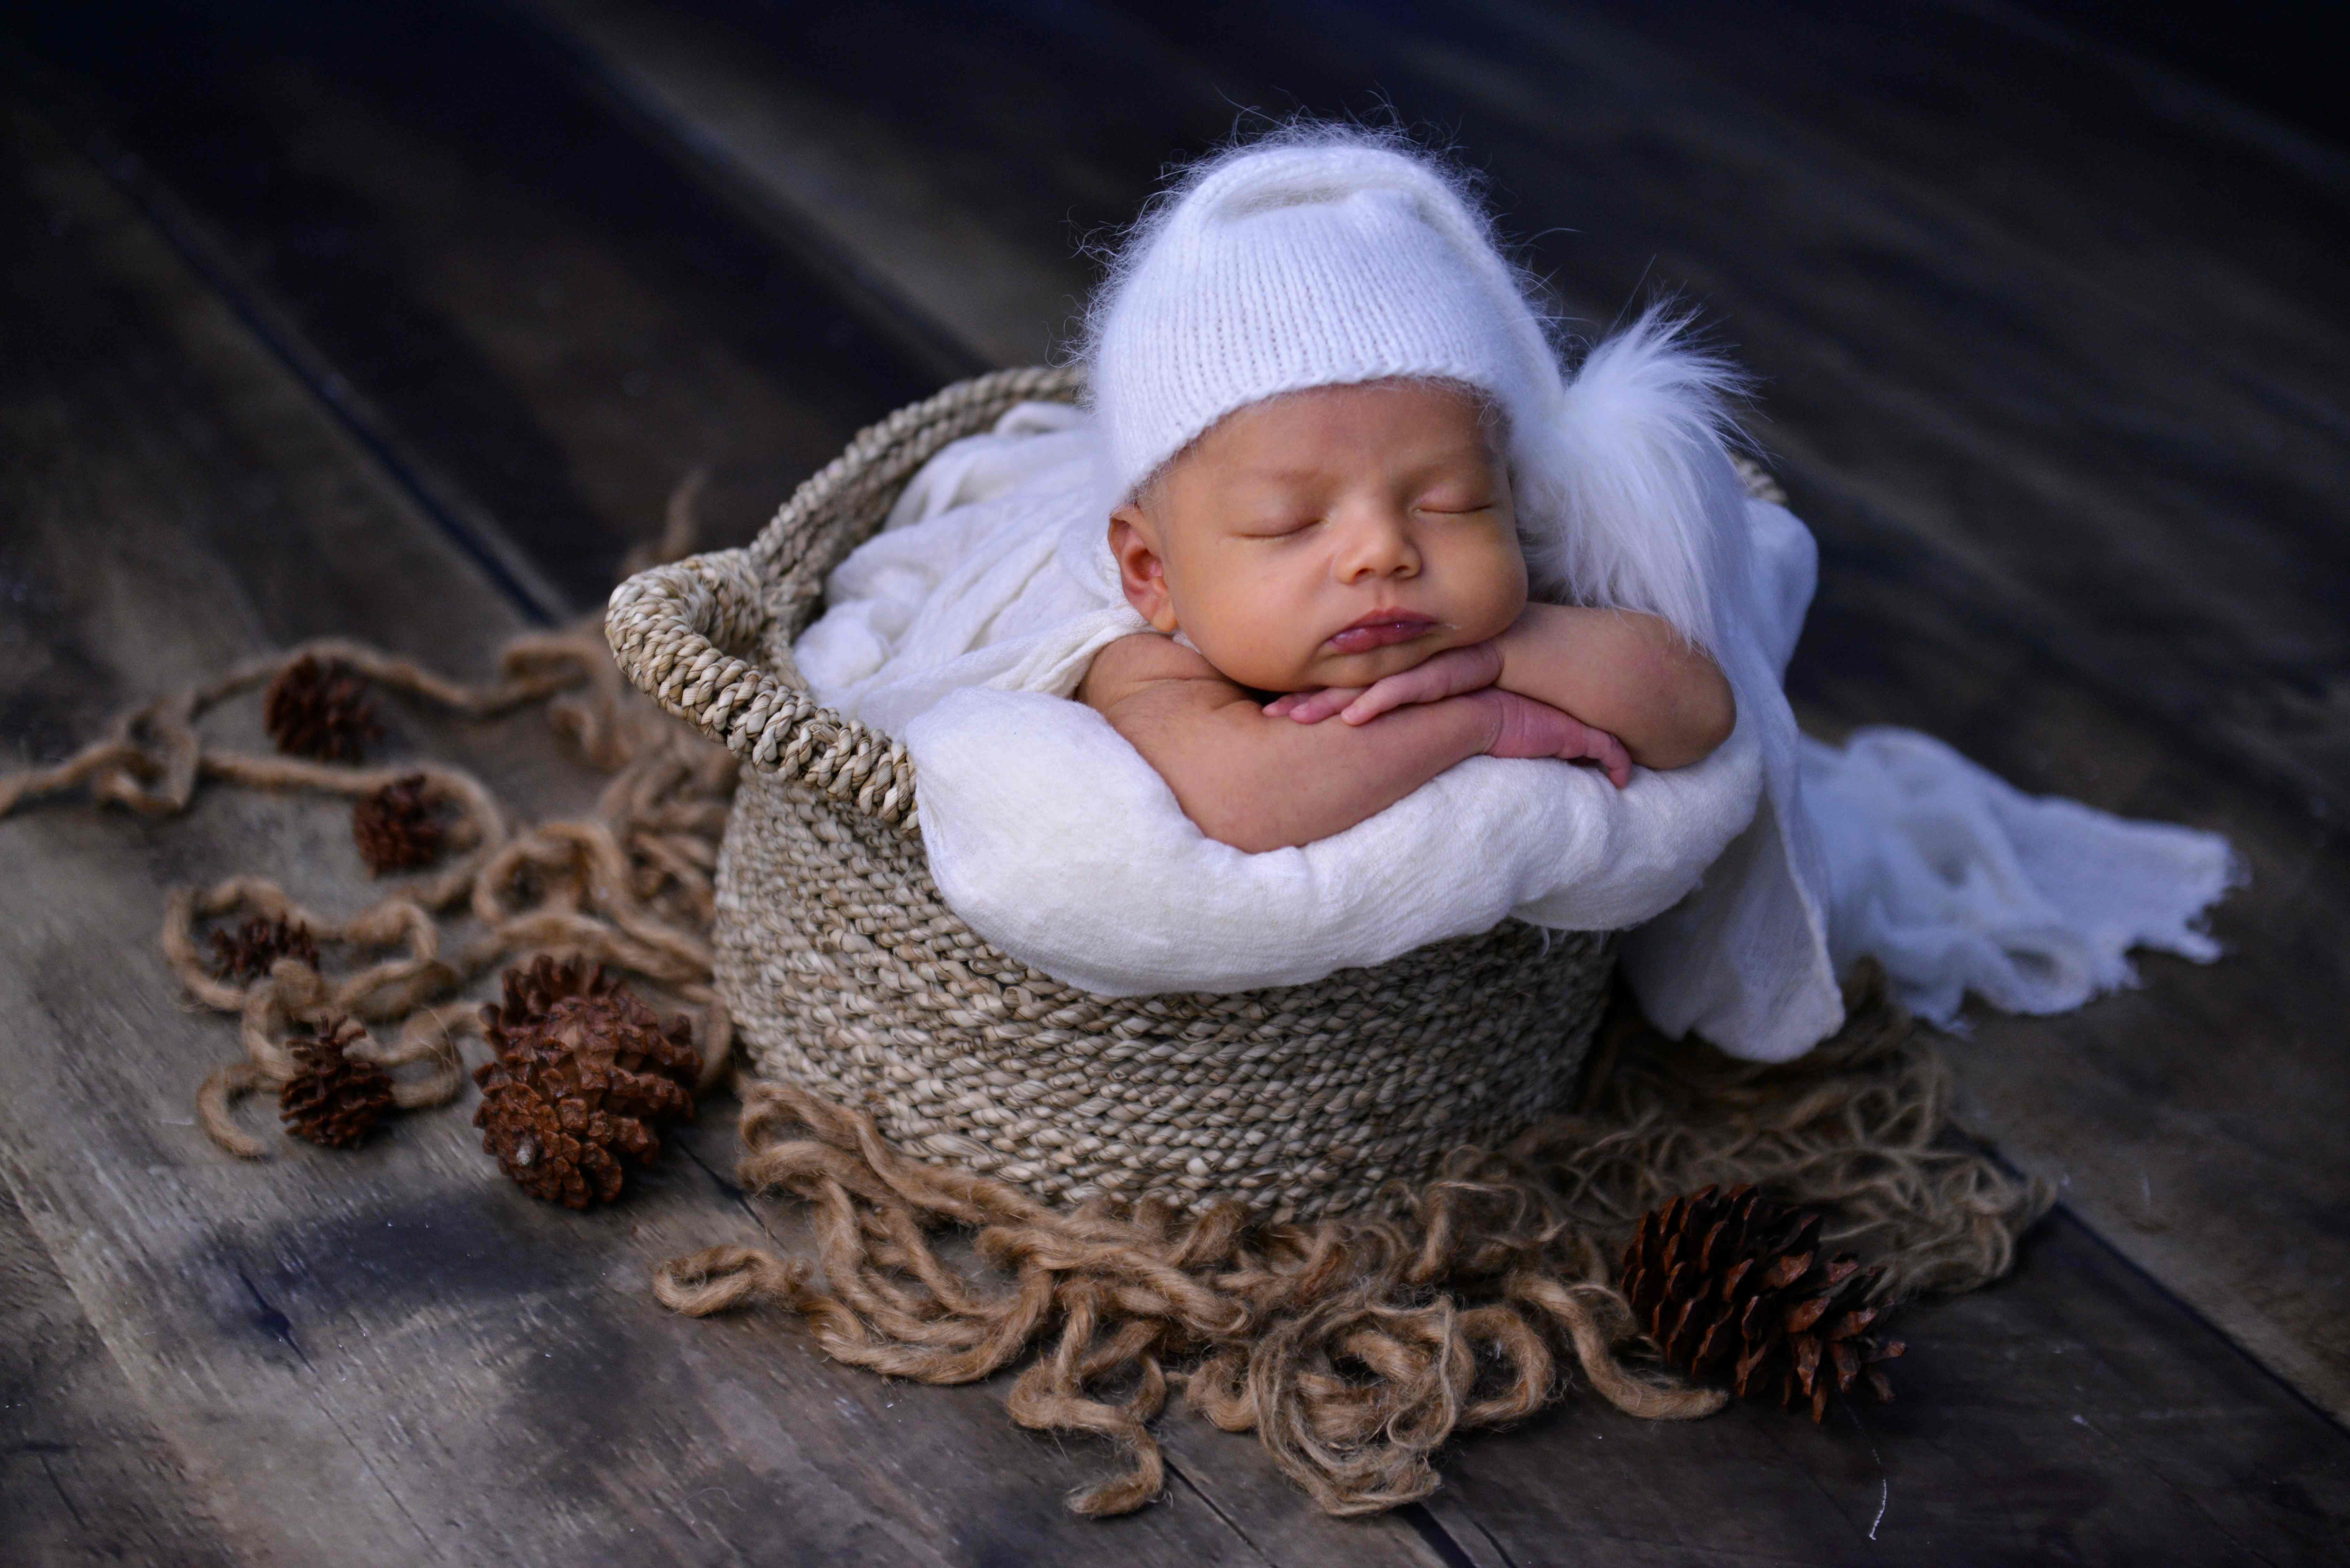 Las primeras fotografías del bebé siempre se recuerdan con nostalgia. (Foto Prensa Libre: AFP)